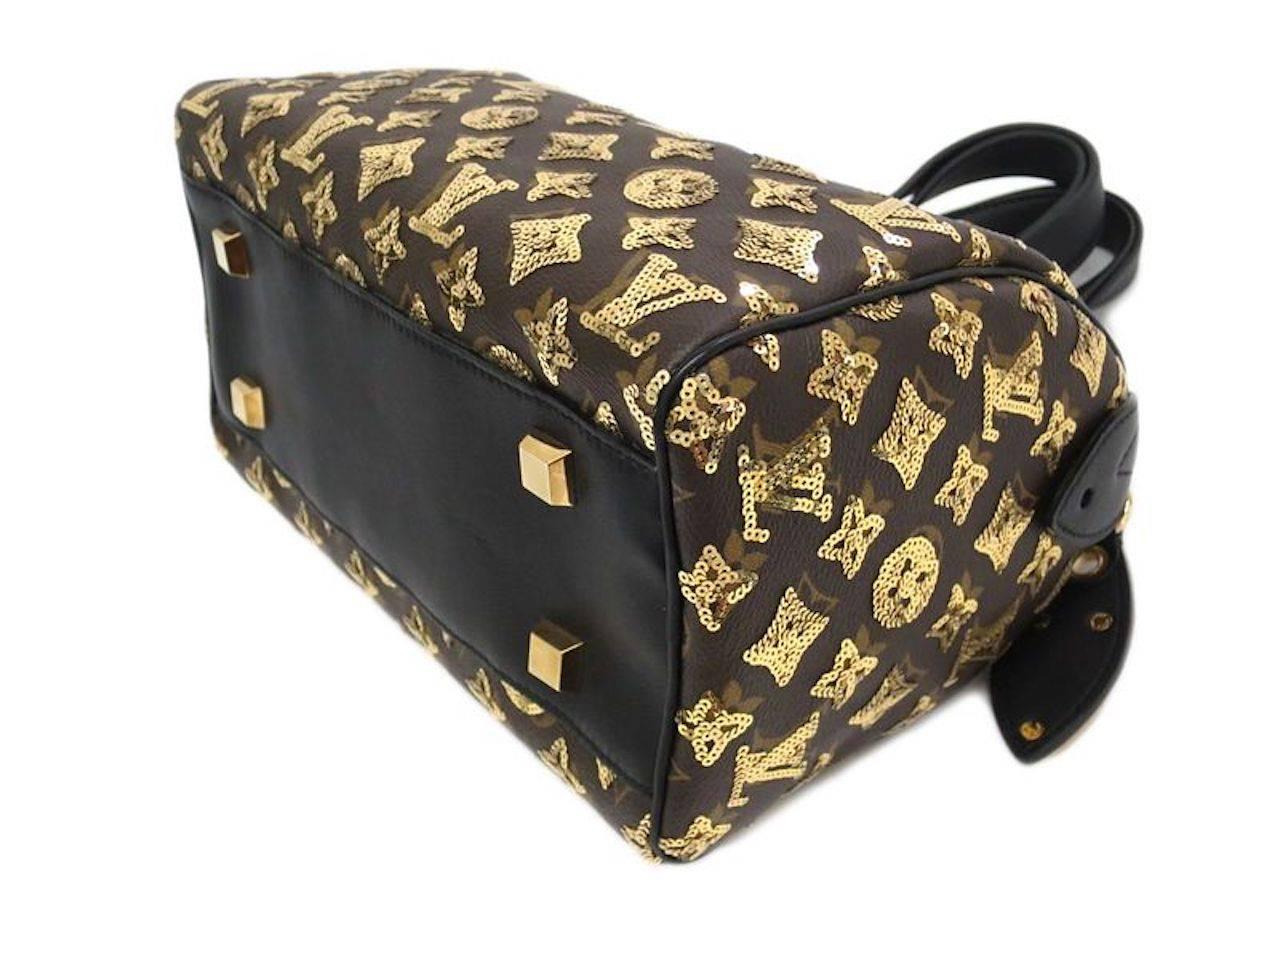 Black Louis Vuitton Limited Edition Sequin Top Handle Satchel Bag